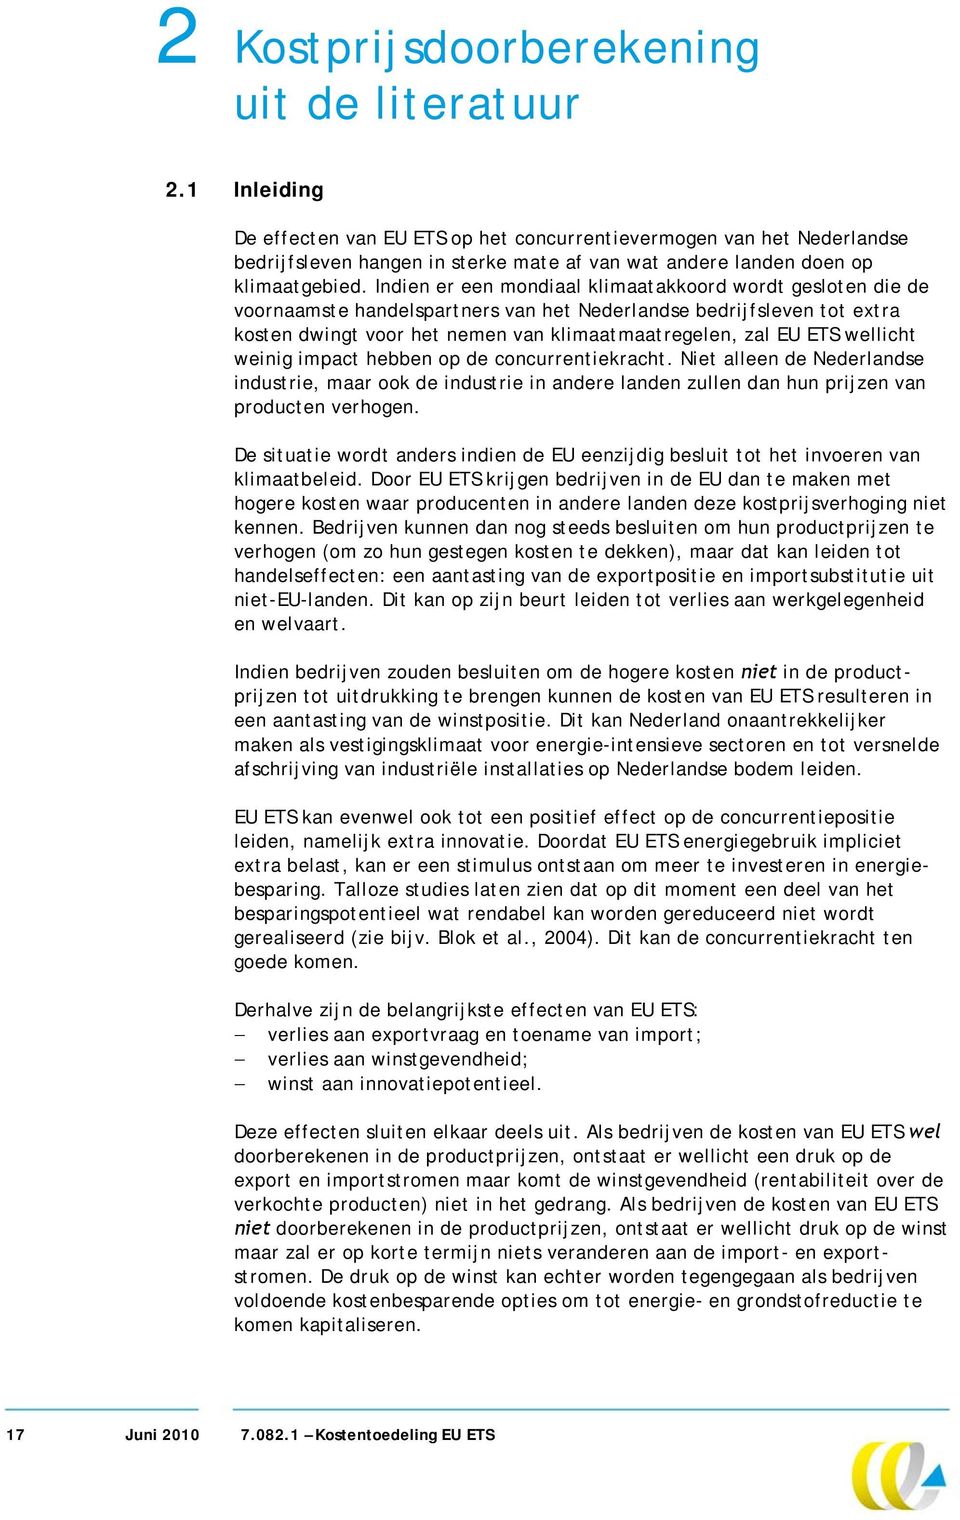 Indien er een mondiaal klimaatakkoord wordt gesloten die de voornaamste handelspartners van het Nederlandse bedrijfsleven tot extra kosten dwingt voor het nemen van klimaatmaatregelen, zal EU ETS